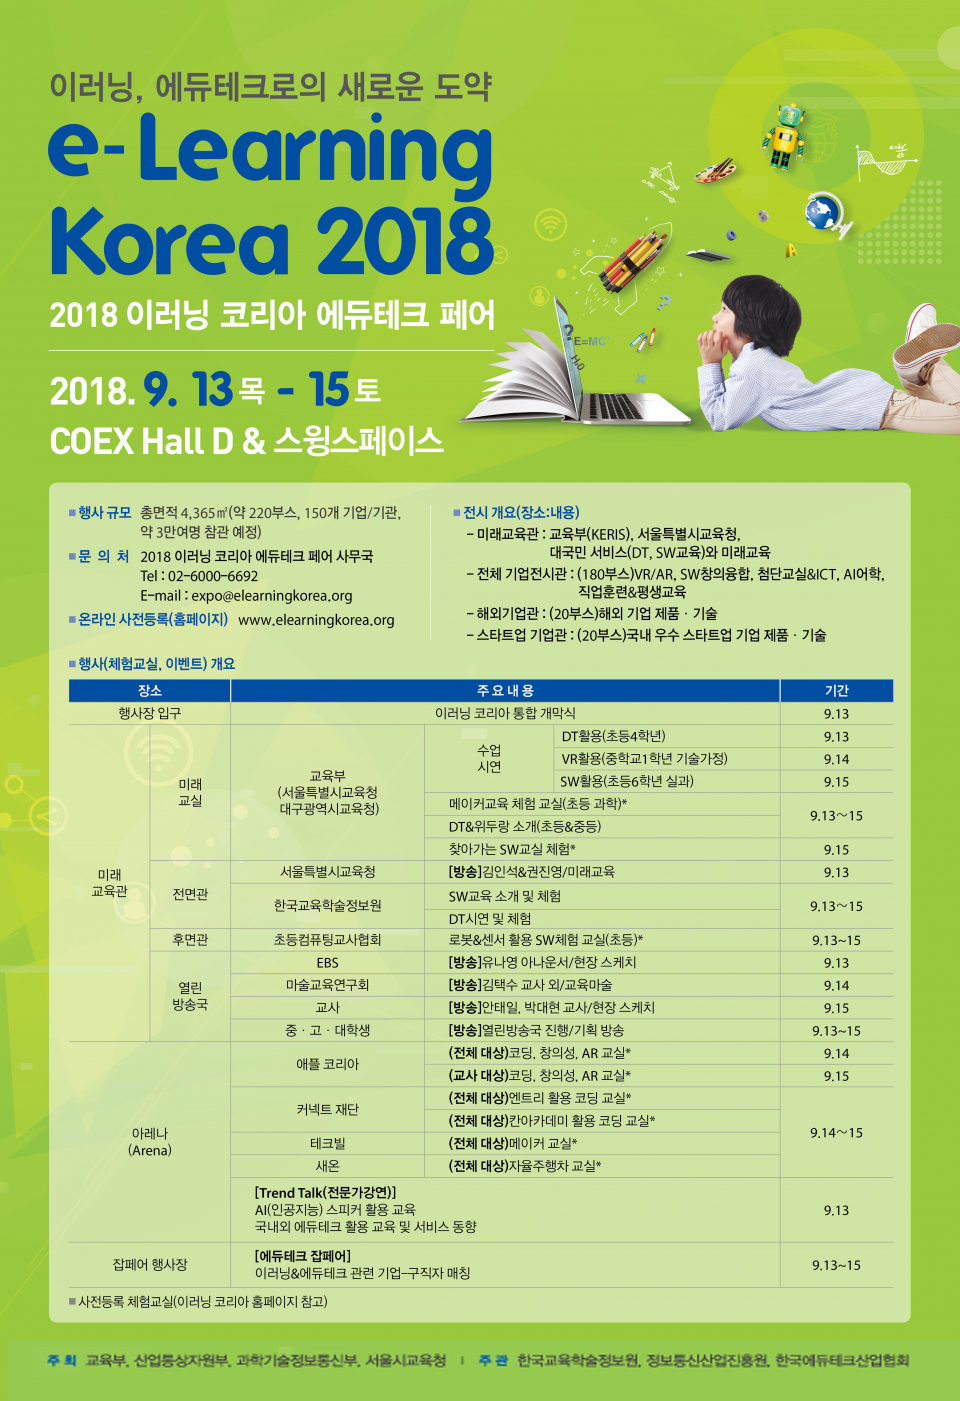 2018 이러닝 코리아 국제 컨퍼런스 및 에듀테크 페어(국제박람회) 개최 안내